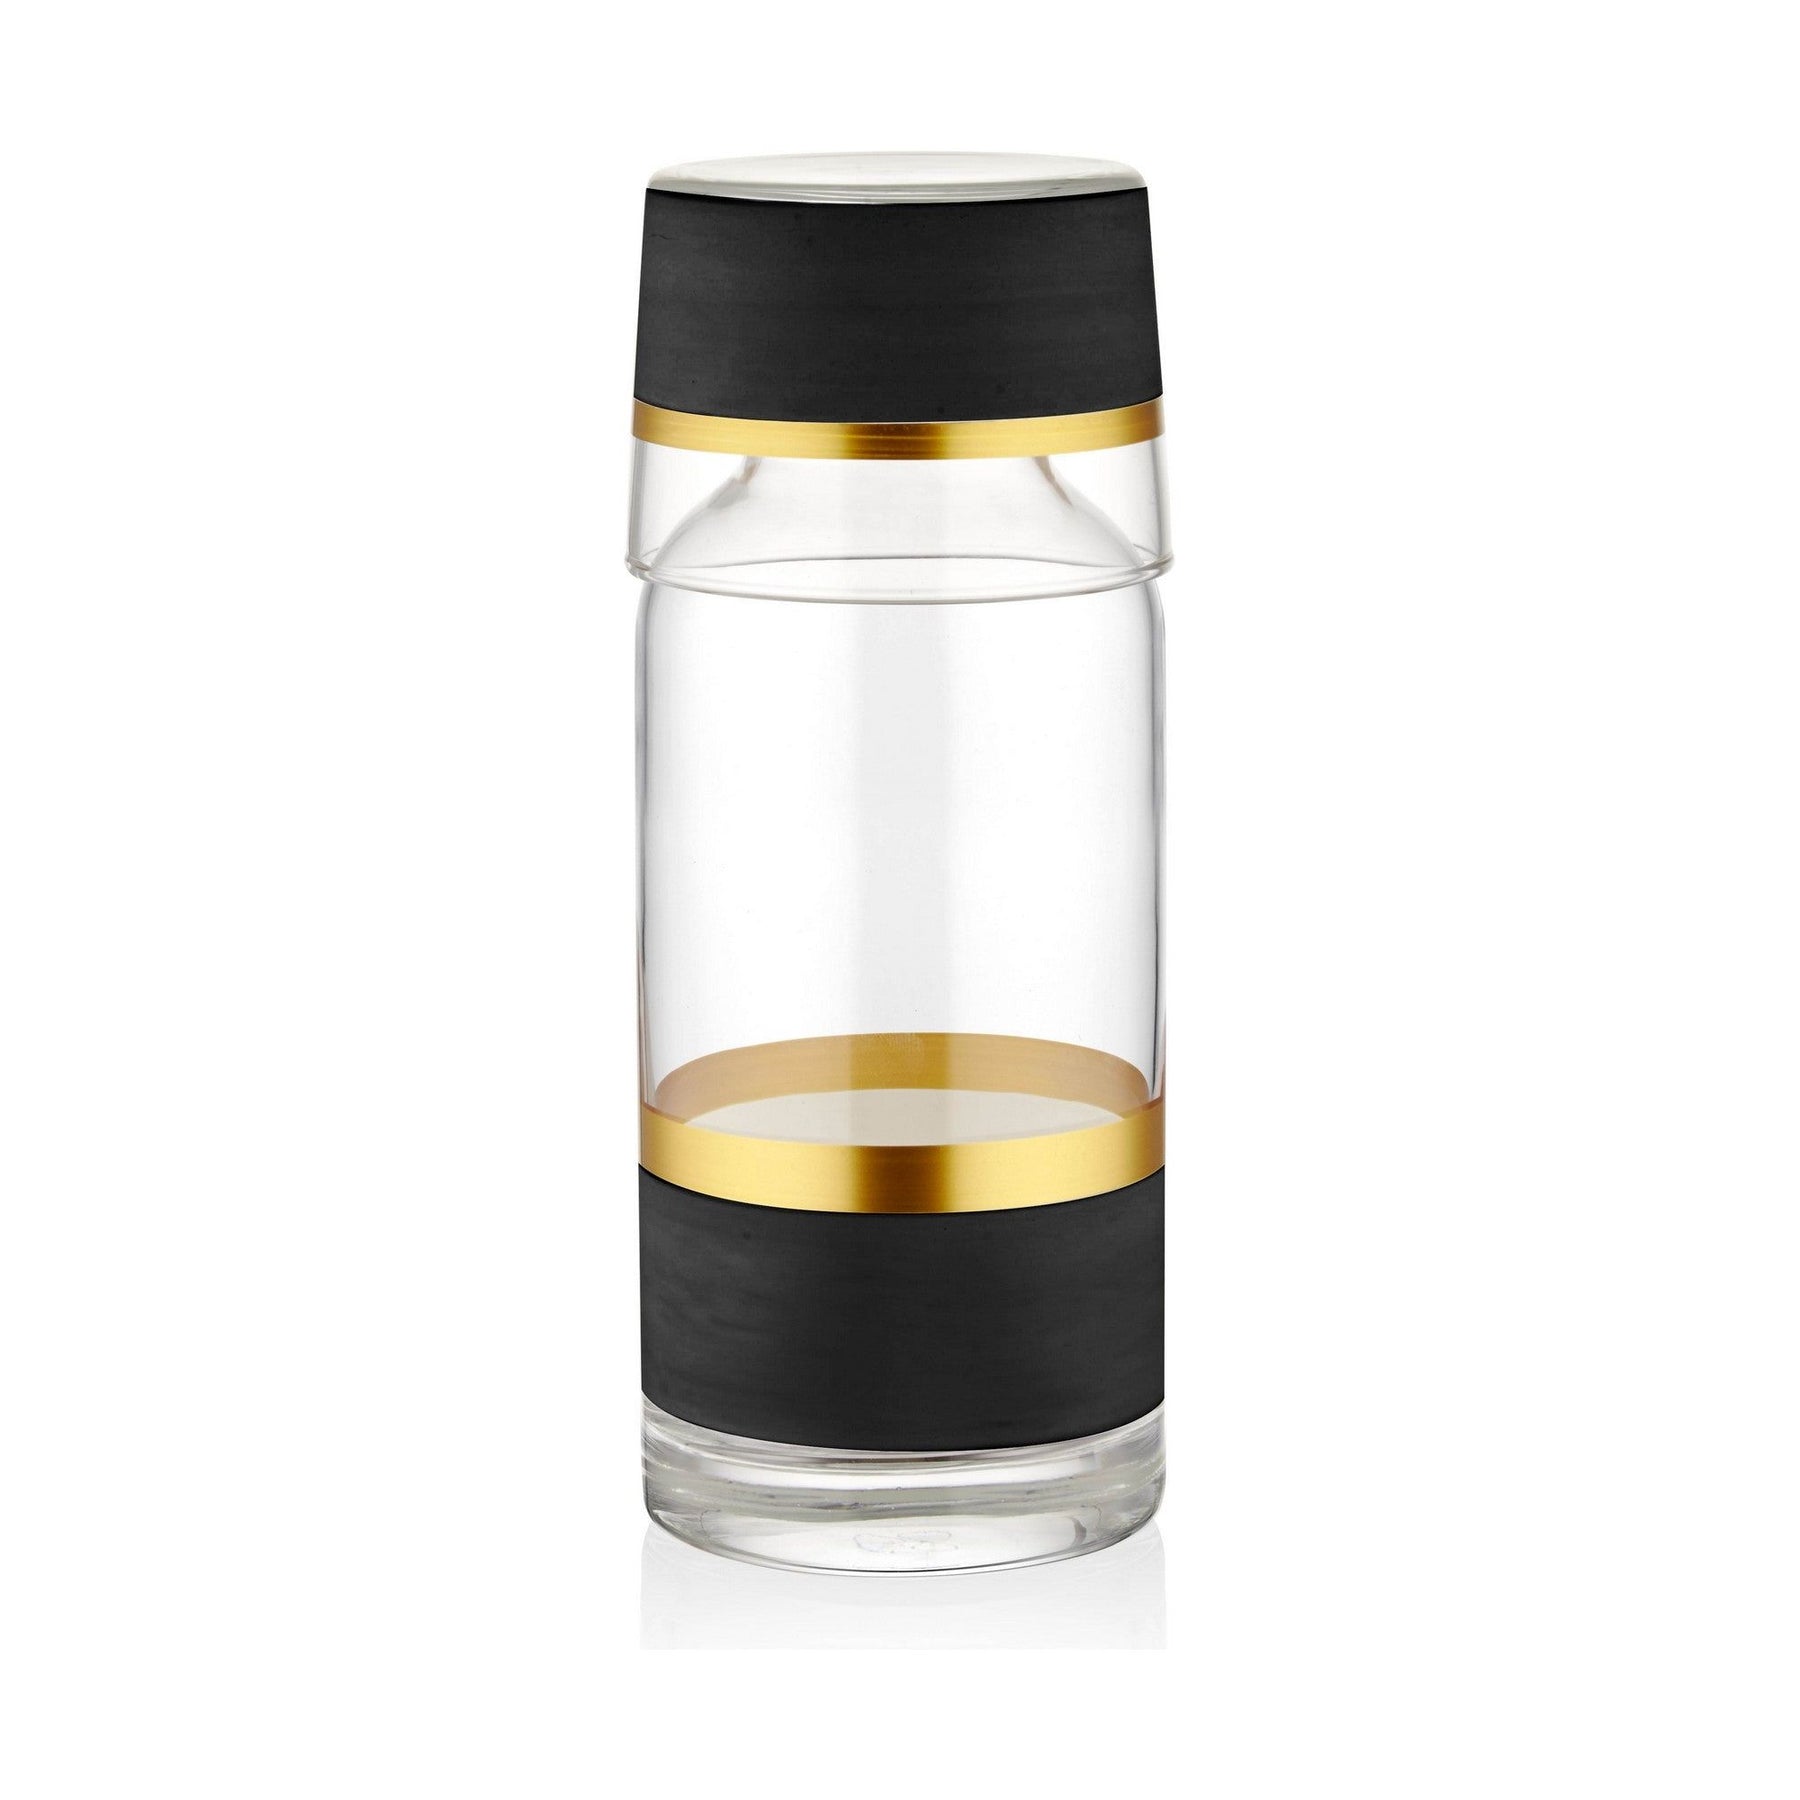 Sticla GLW0007, negru/auriu/transparent, 100% sticla, 6 buc